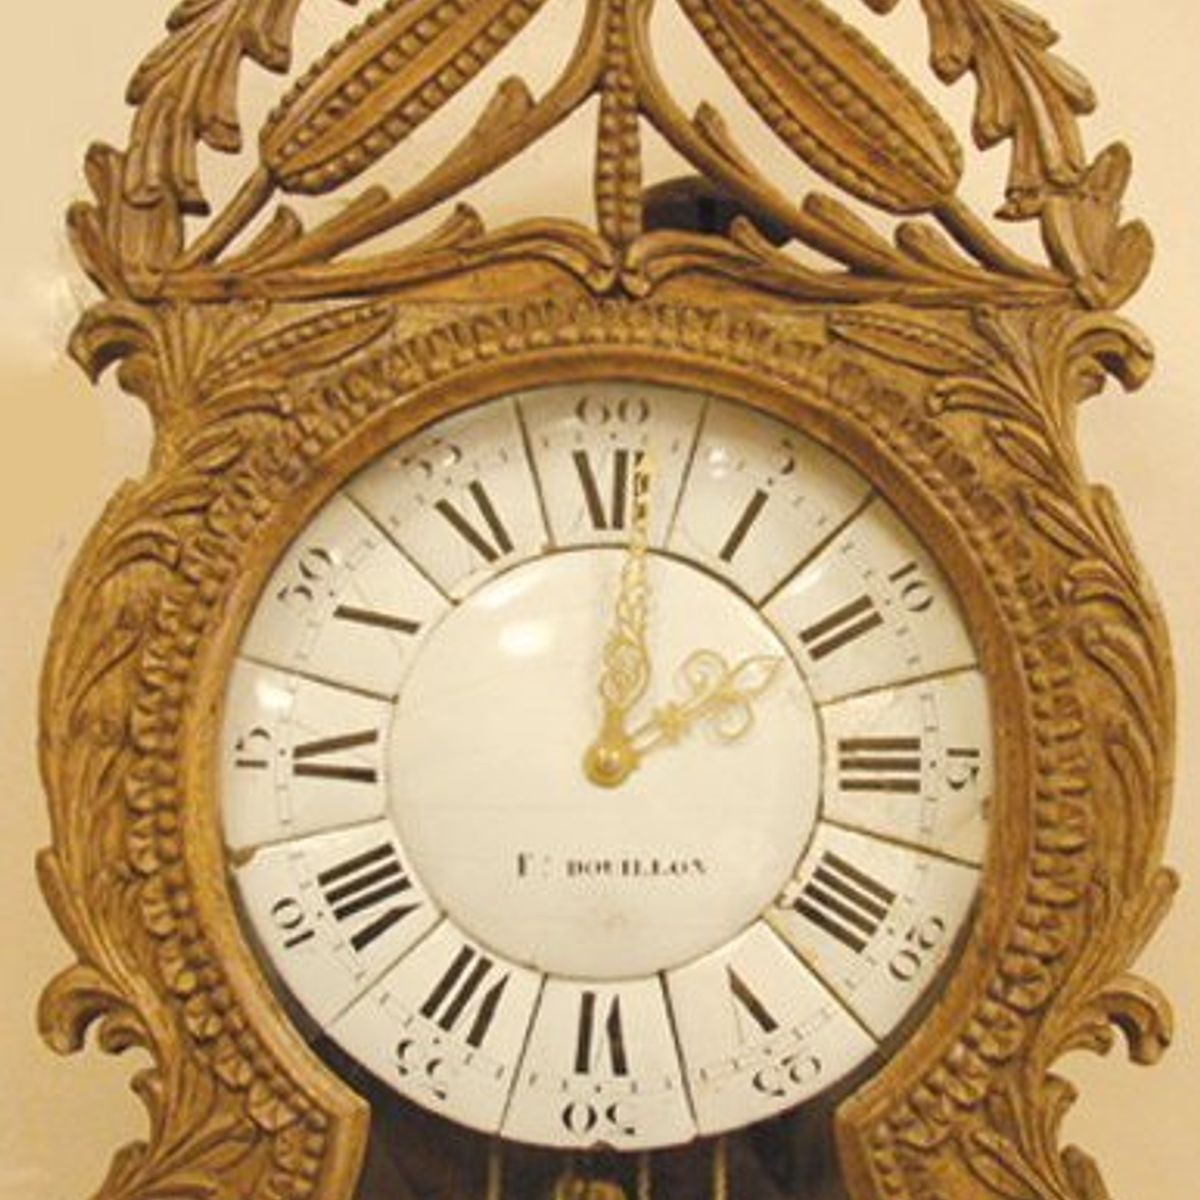 Museum of the clock of saint-nicolas d'aliermont